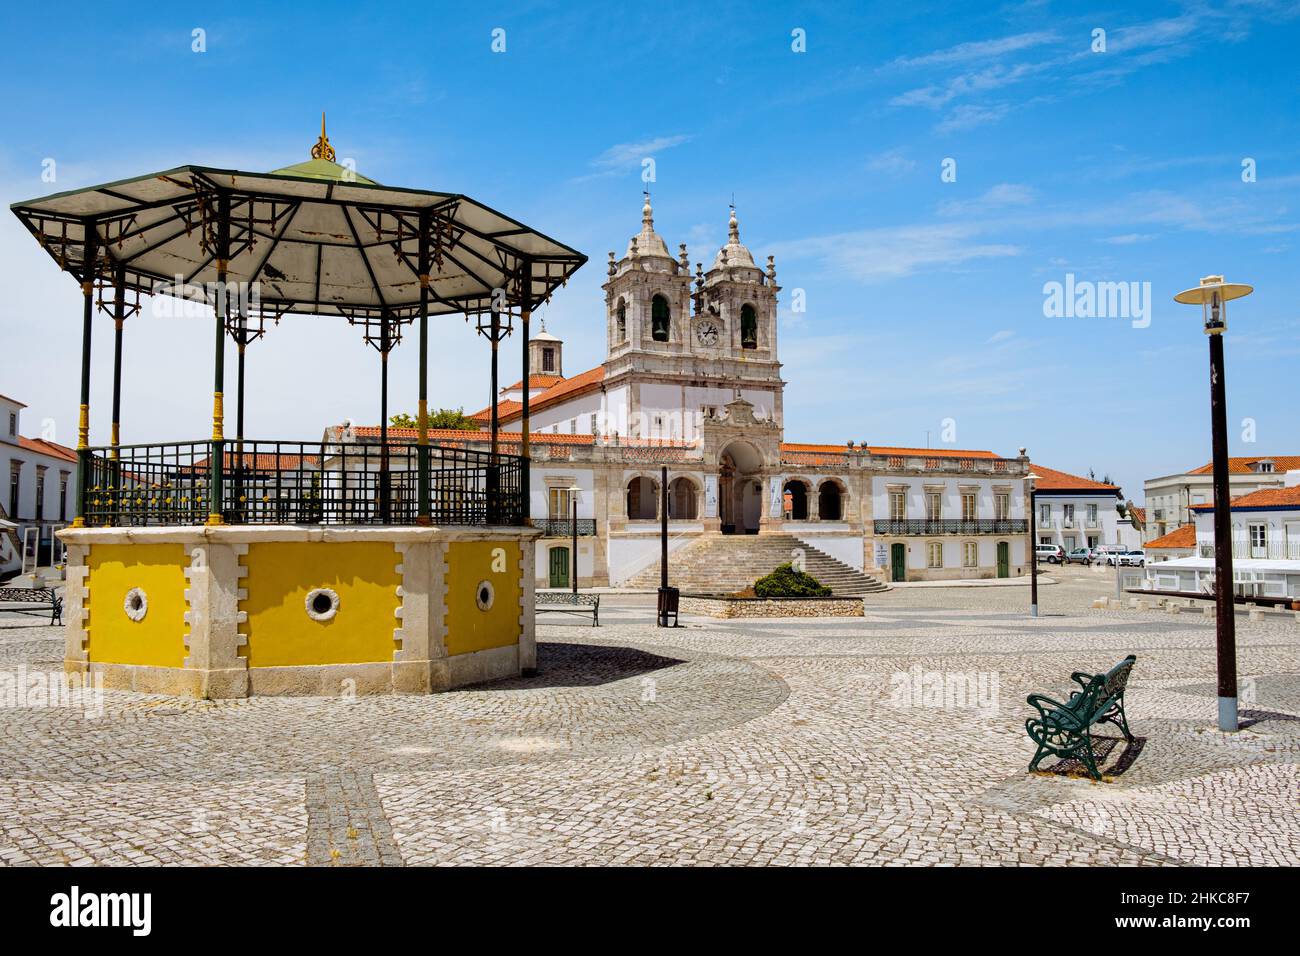 Nazare, Portogallo - 20 luglio 2020: Una veduta del Santuario di nostra Signora di Nazaré, un imponente santuario mariano che ricorda un antico miracolo occurr Foto Stock